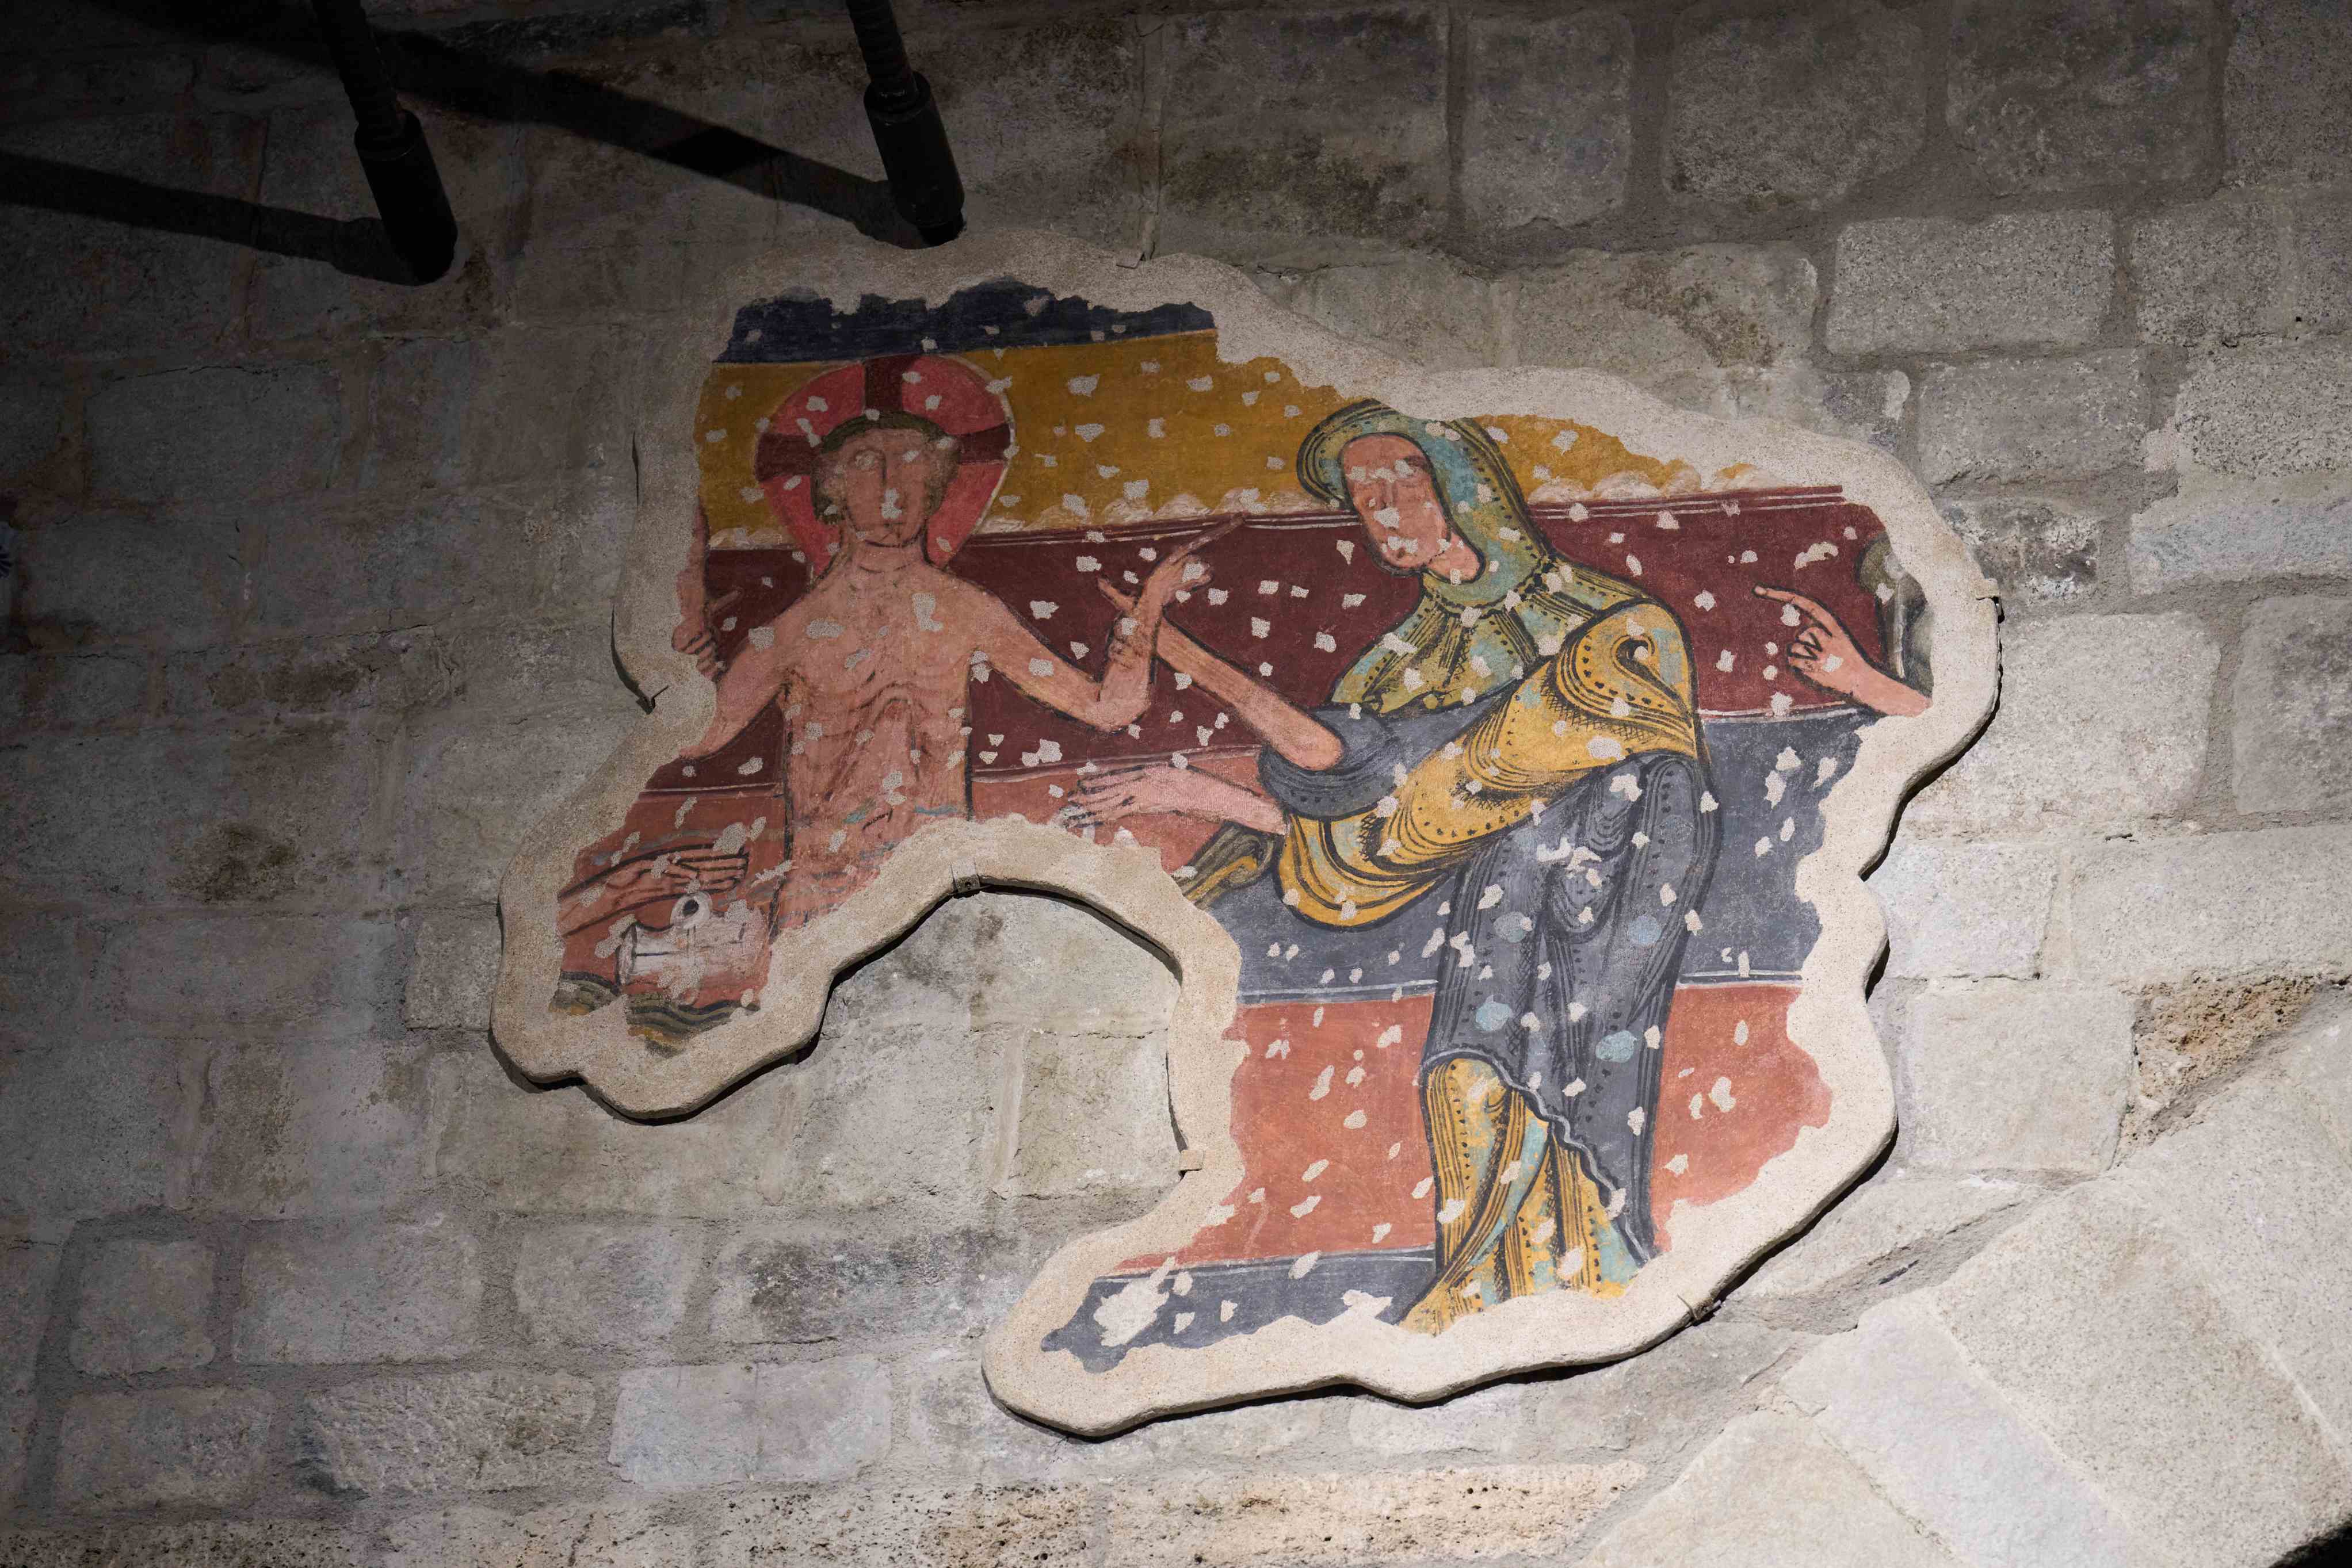 Restaurat un fragment de pintura mural romànica de Santa Maria de Taüll